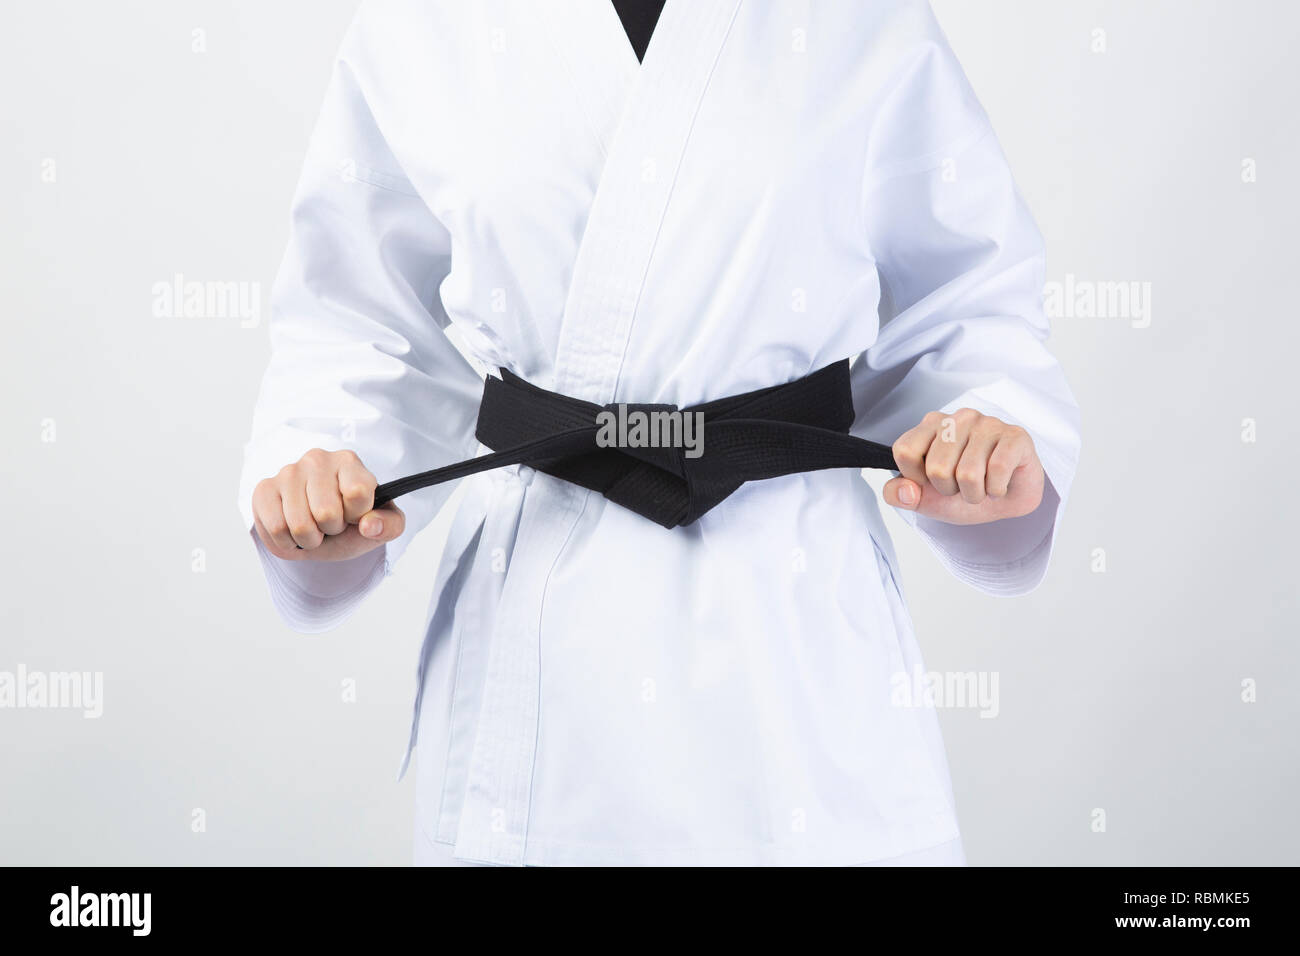 Cinturón Negro celebrada por mujer vistiendo traje de karate sobre fondo blanco. Foto de stock